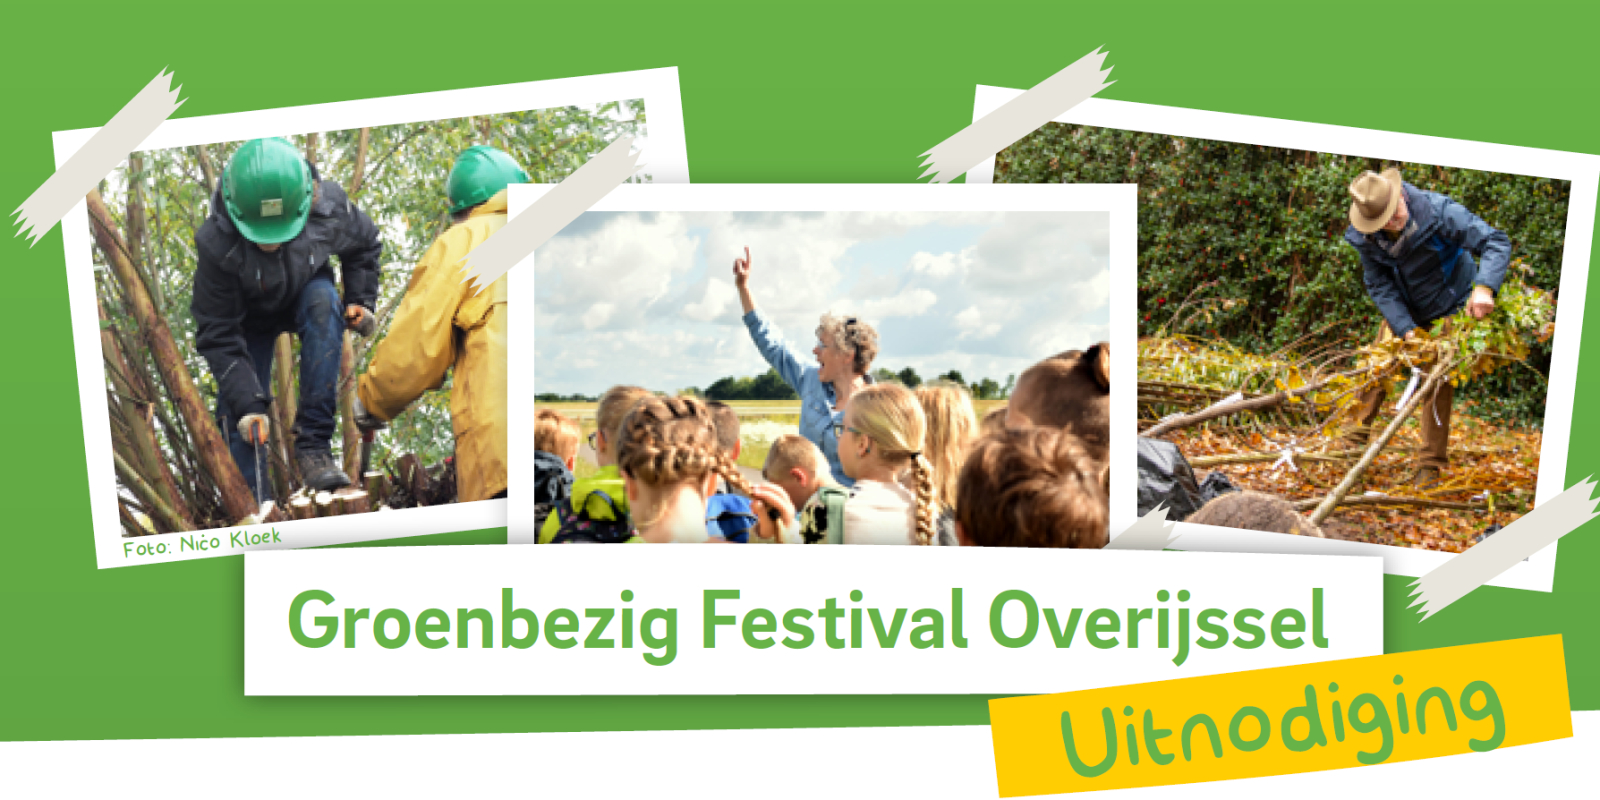 Groenbezig festival